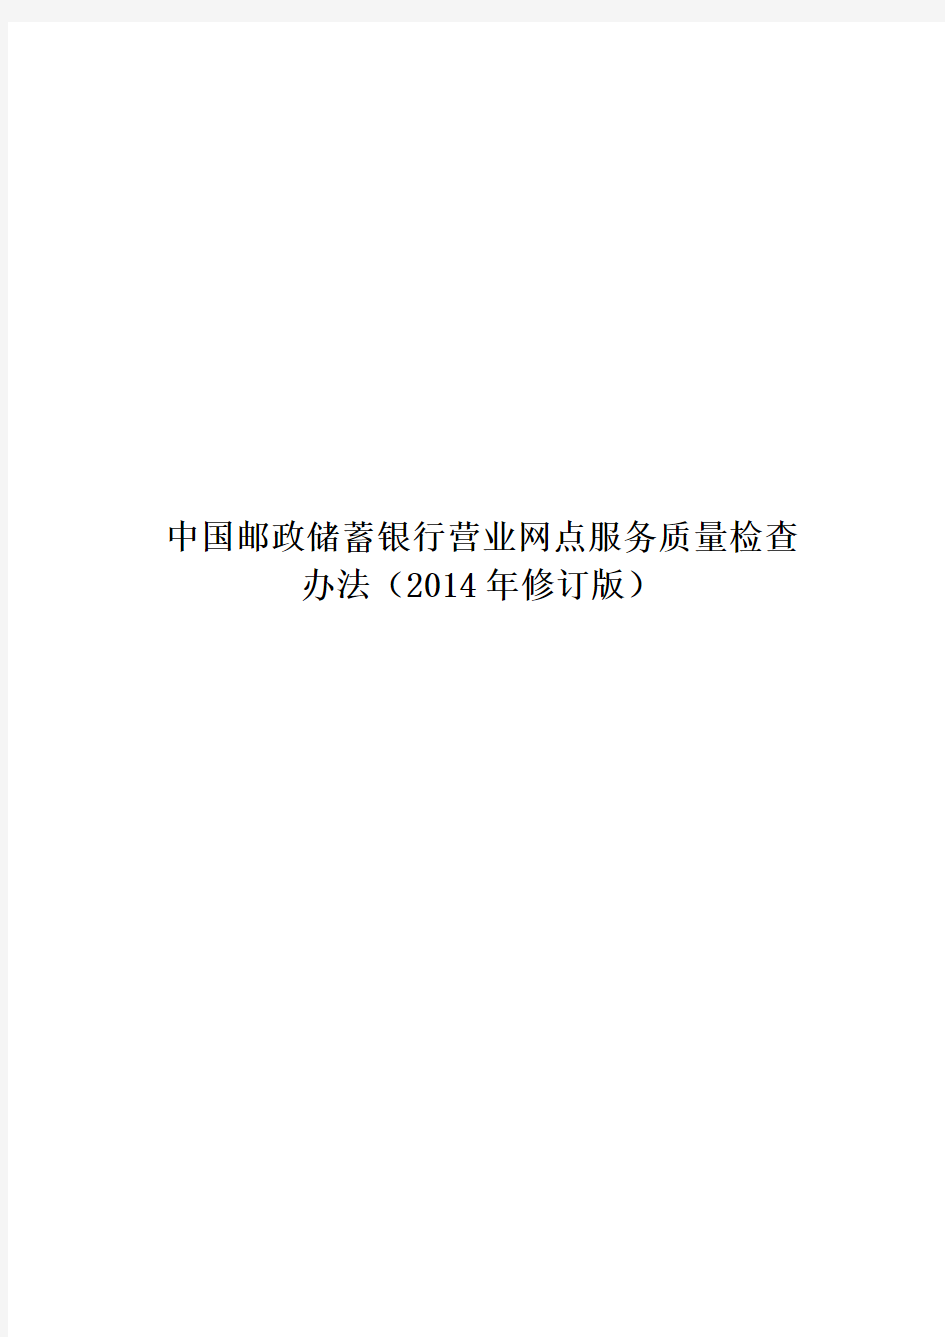 (9.19-3.7)中国邮政储蓄银行网点服务质量检查办法(2014年修订版)